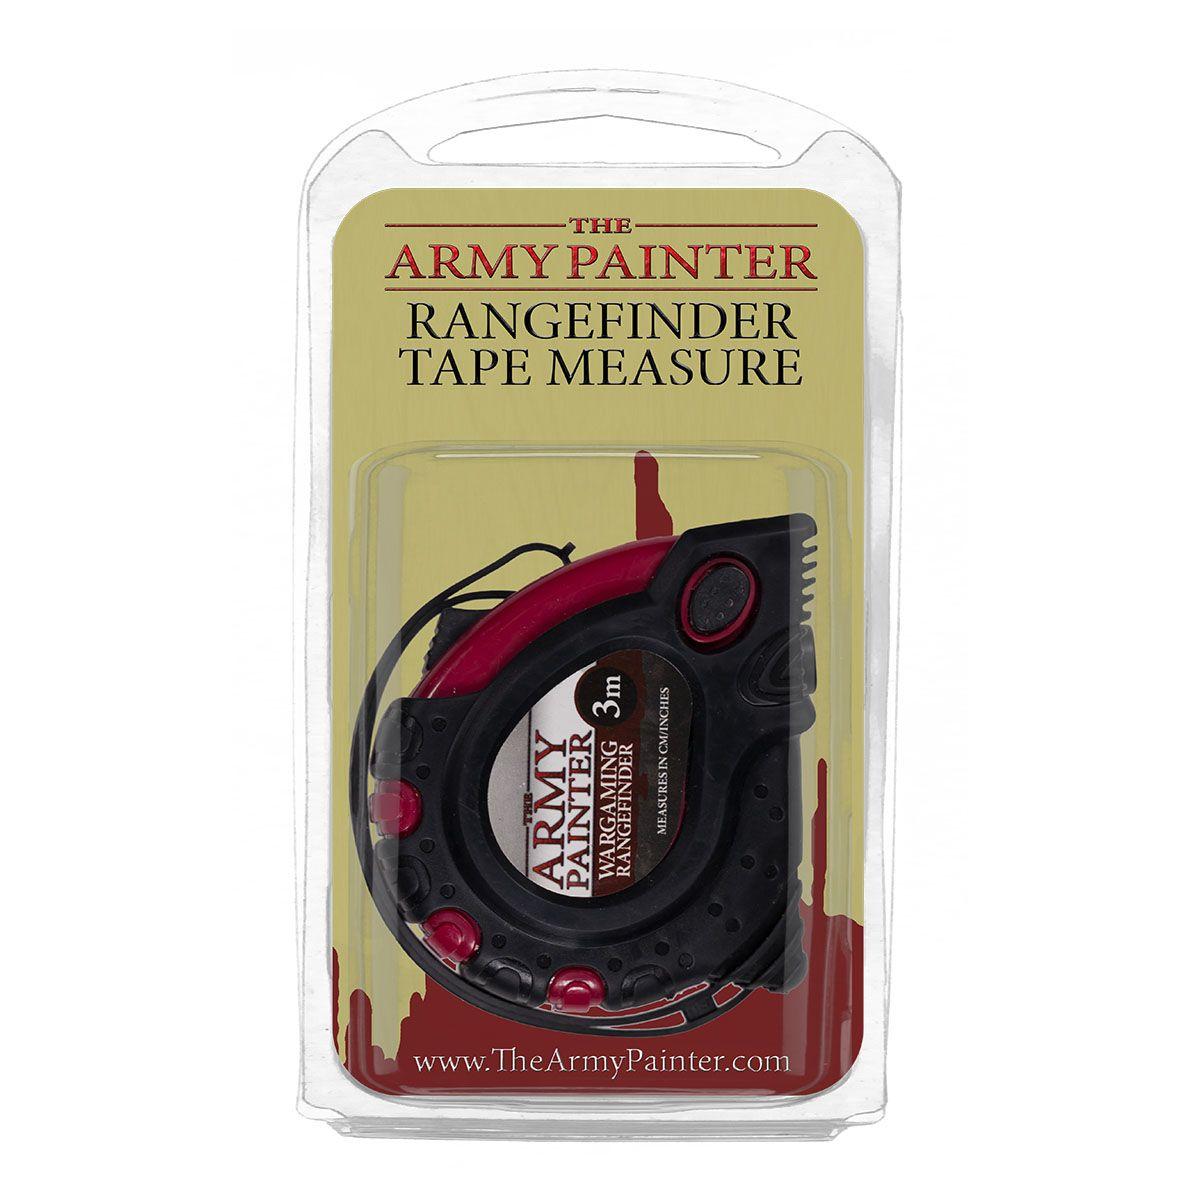 Army Painter Tape Measure Rangefinder 2019